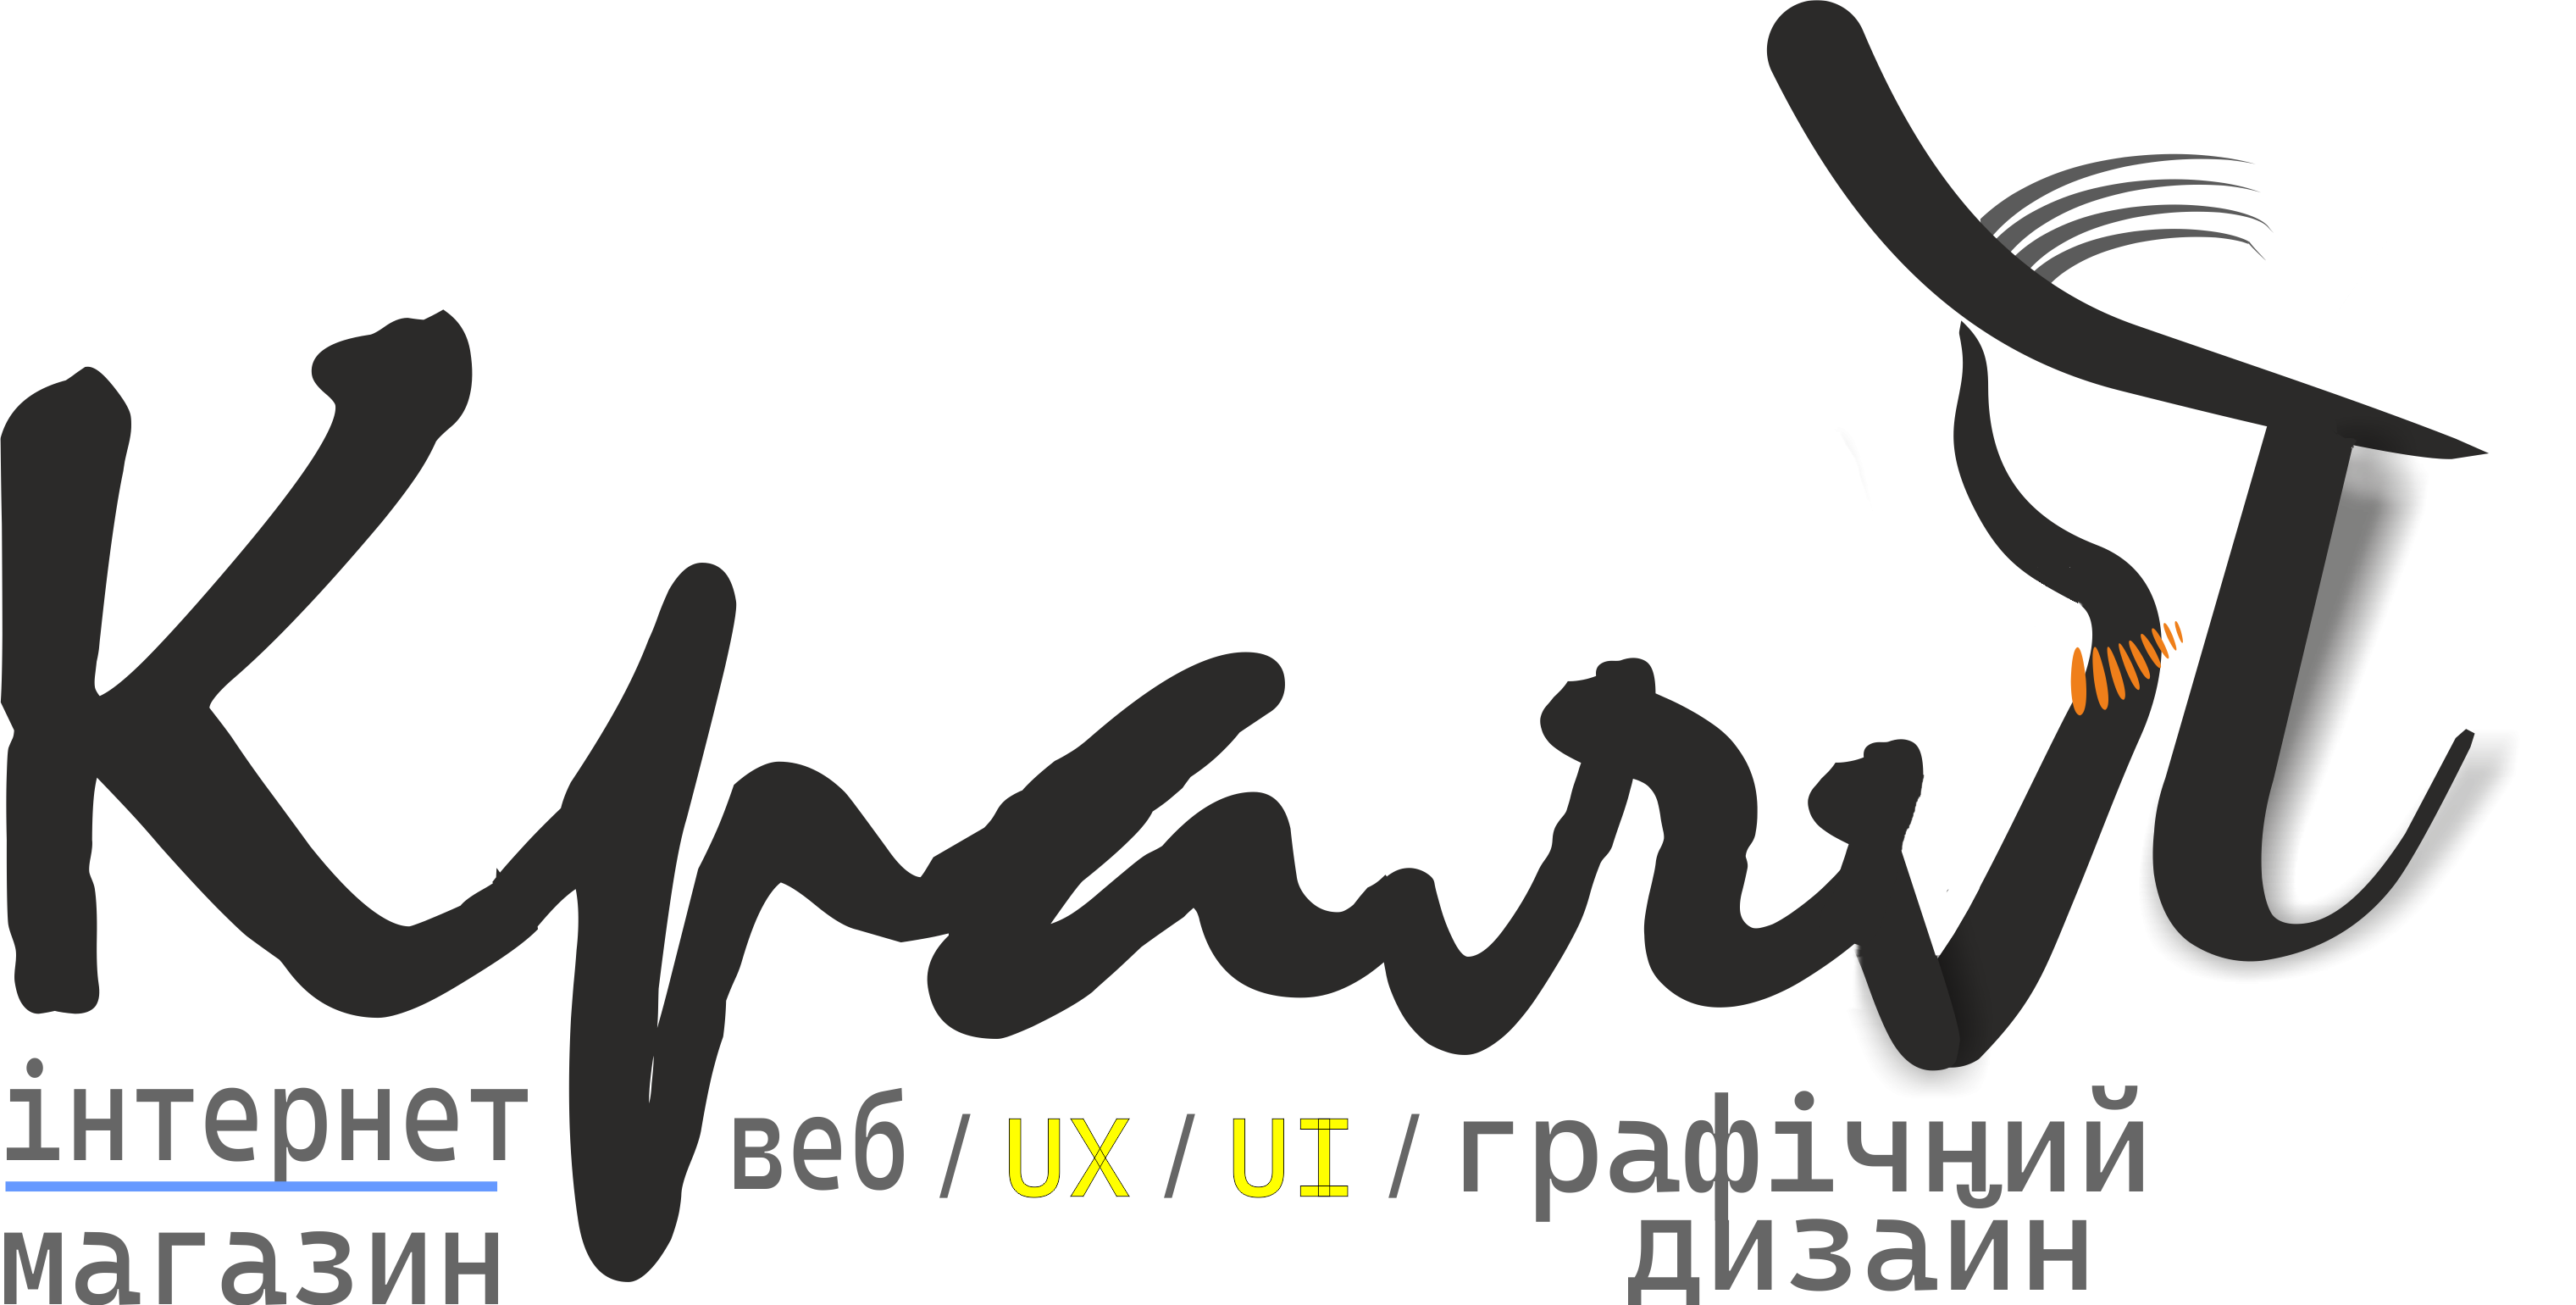 Блог портфоліо UX/UI дизайнера. Україна. Київ.